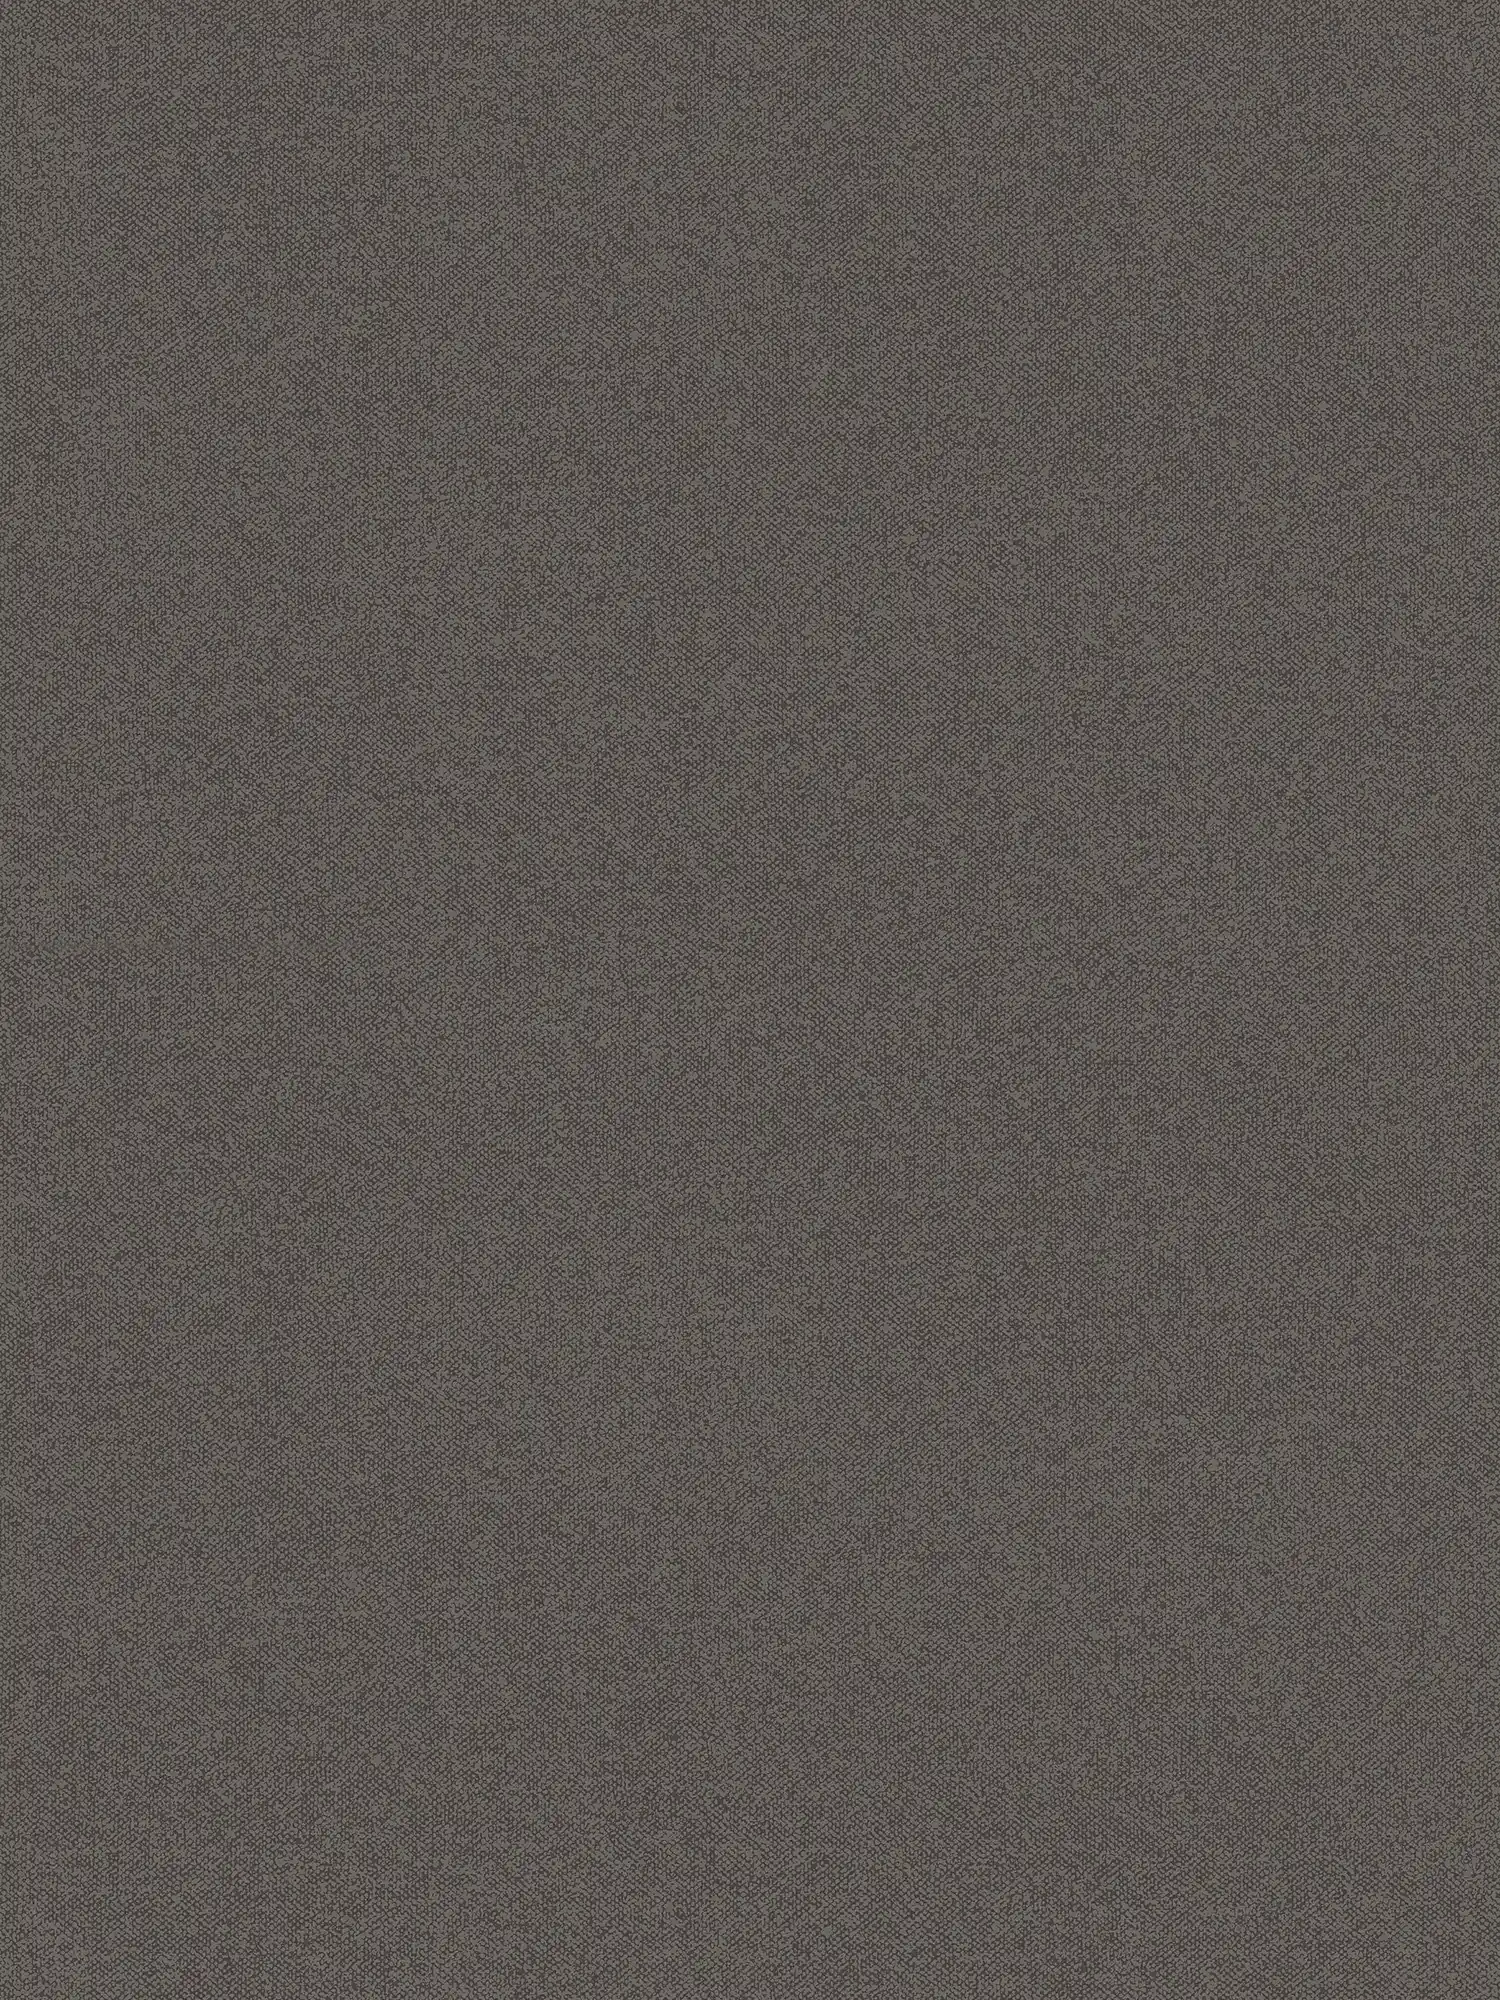 Papier peint uni aspect lin - marron, noir
